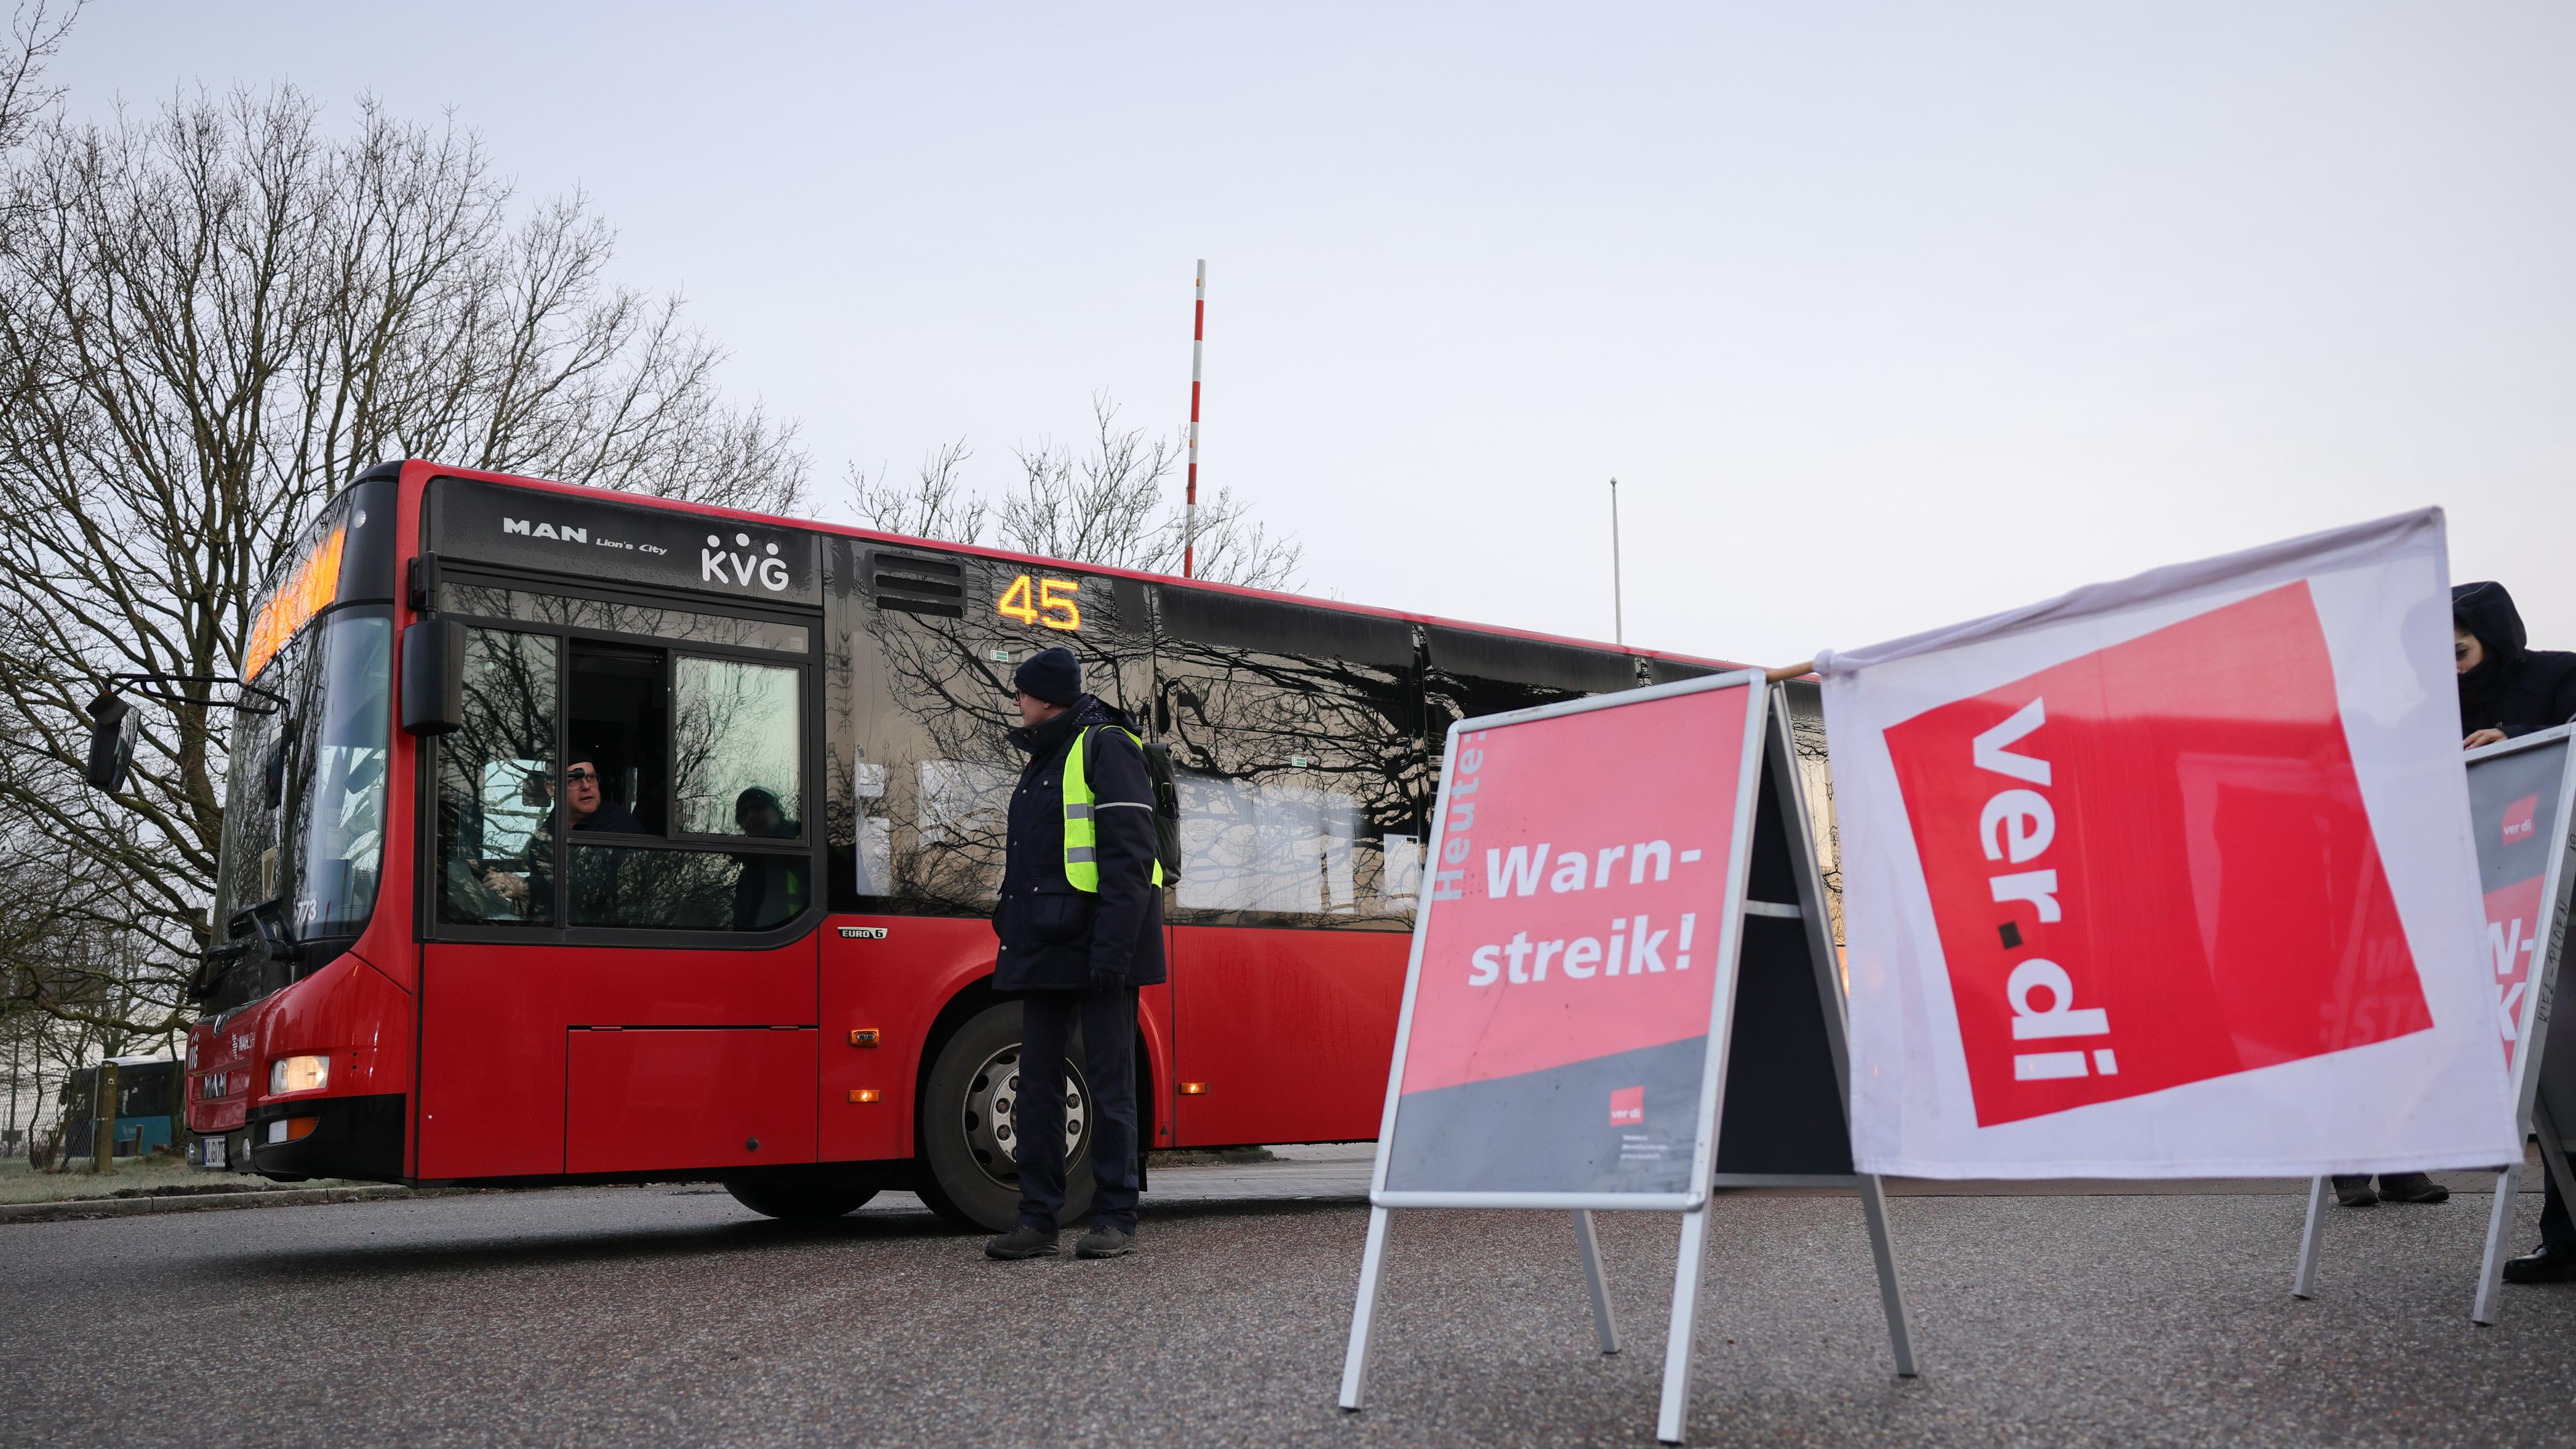 Archiv, 26.02.2024, Schleswig-Holstein, Kiel: Ein Schild mit der Aufschrift "Warnstreik" und eine Verdi-Flagge sind vor einem stehenden Bus zu sehen.